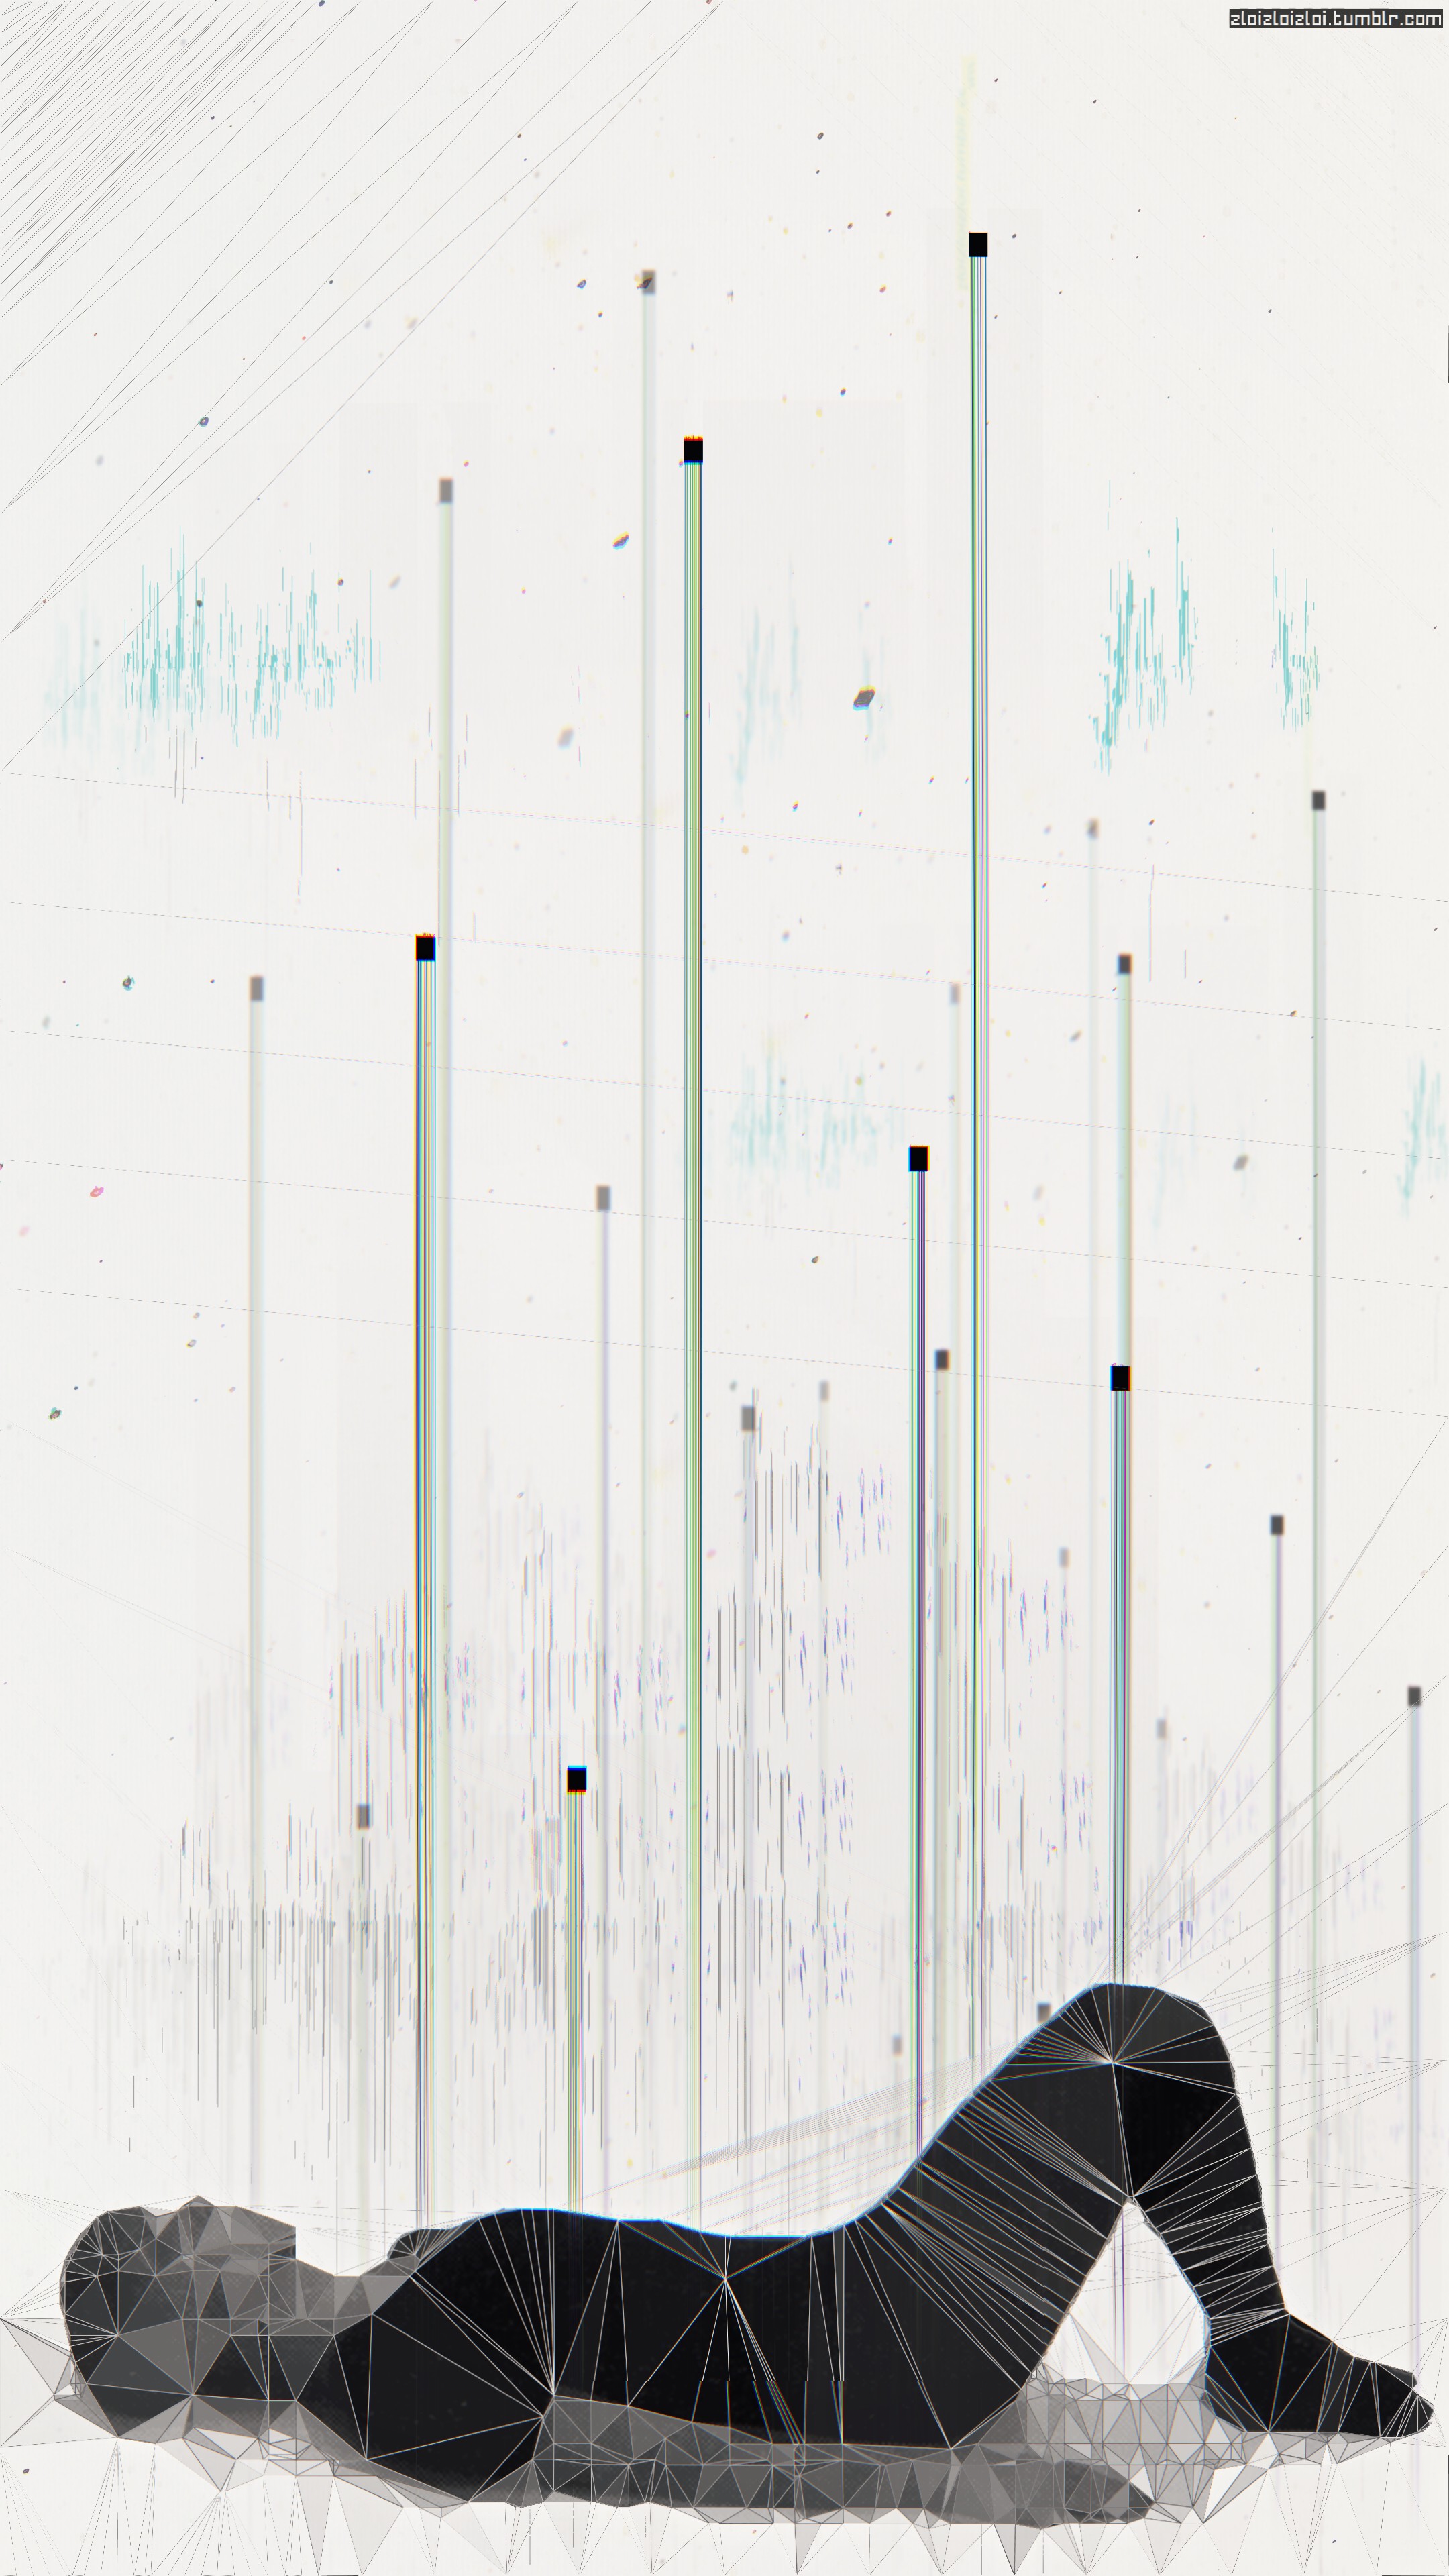 glitch art, Abstract, Cyberpunk Wallpaper